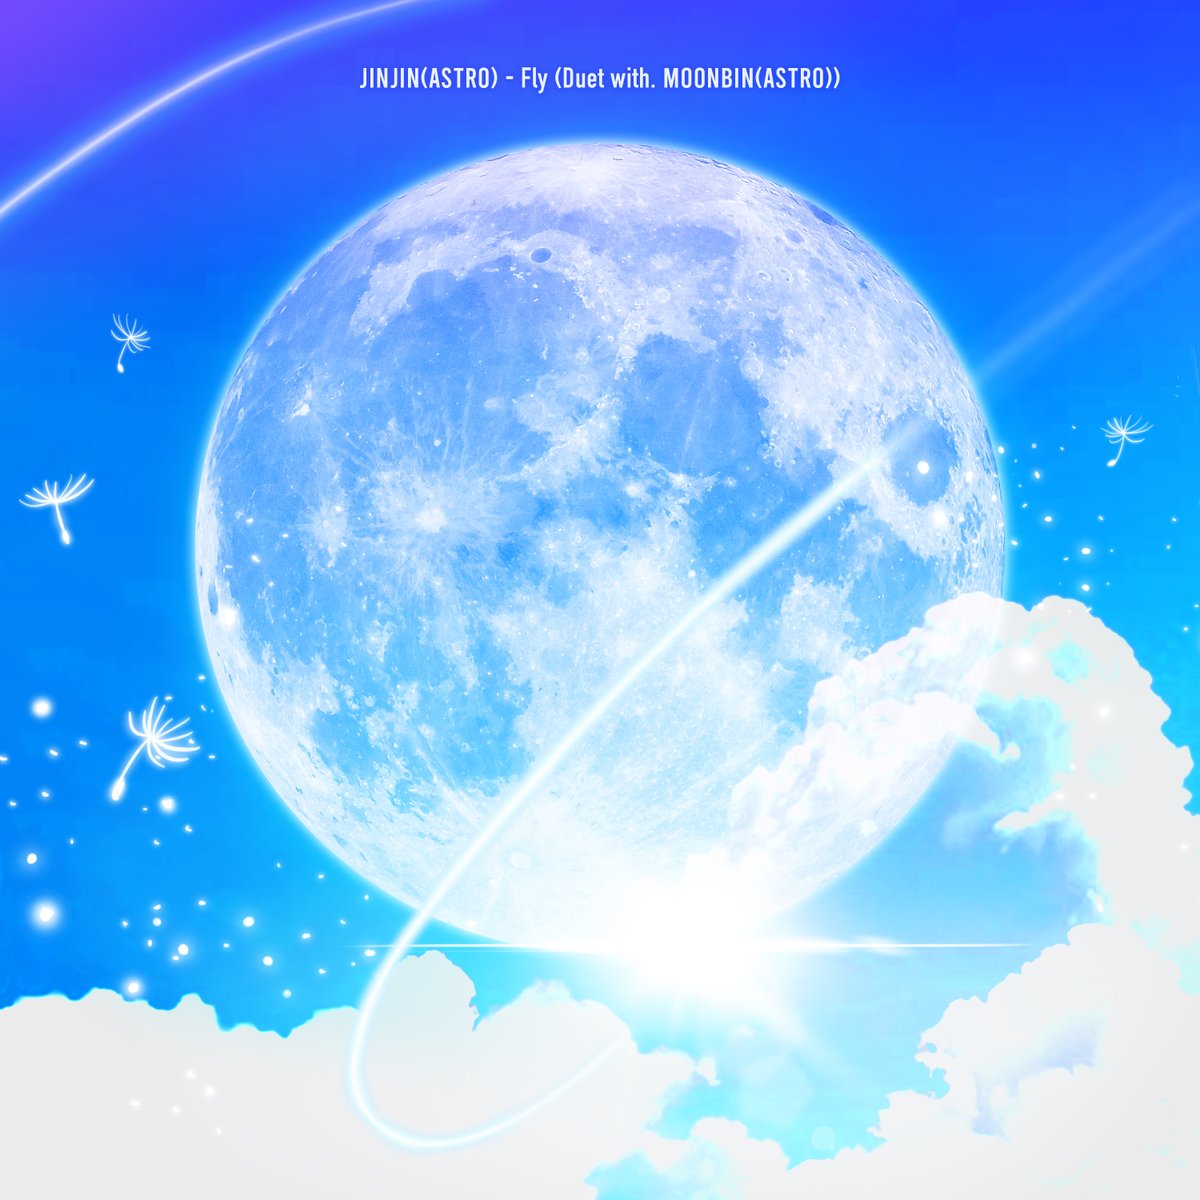 [#진진] JINJIN Digital Single <Fly (Duet with. 문빈(ASTRO))> OUT NOW ▶ 멜론 - han.gl/BQXf1 ▶ 지니 - han.gl/BH1Mc ▶ FLO - han.gl/KrN1L #아스트로 #ASTRO #JINJIN #문빈 #MOONBIN #Fly